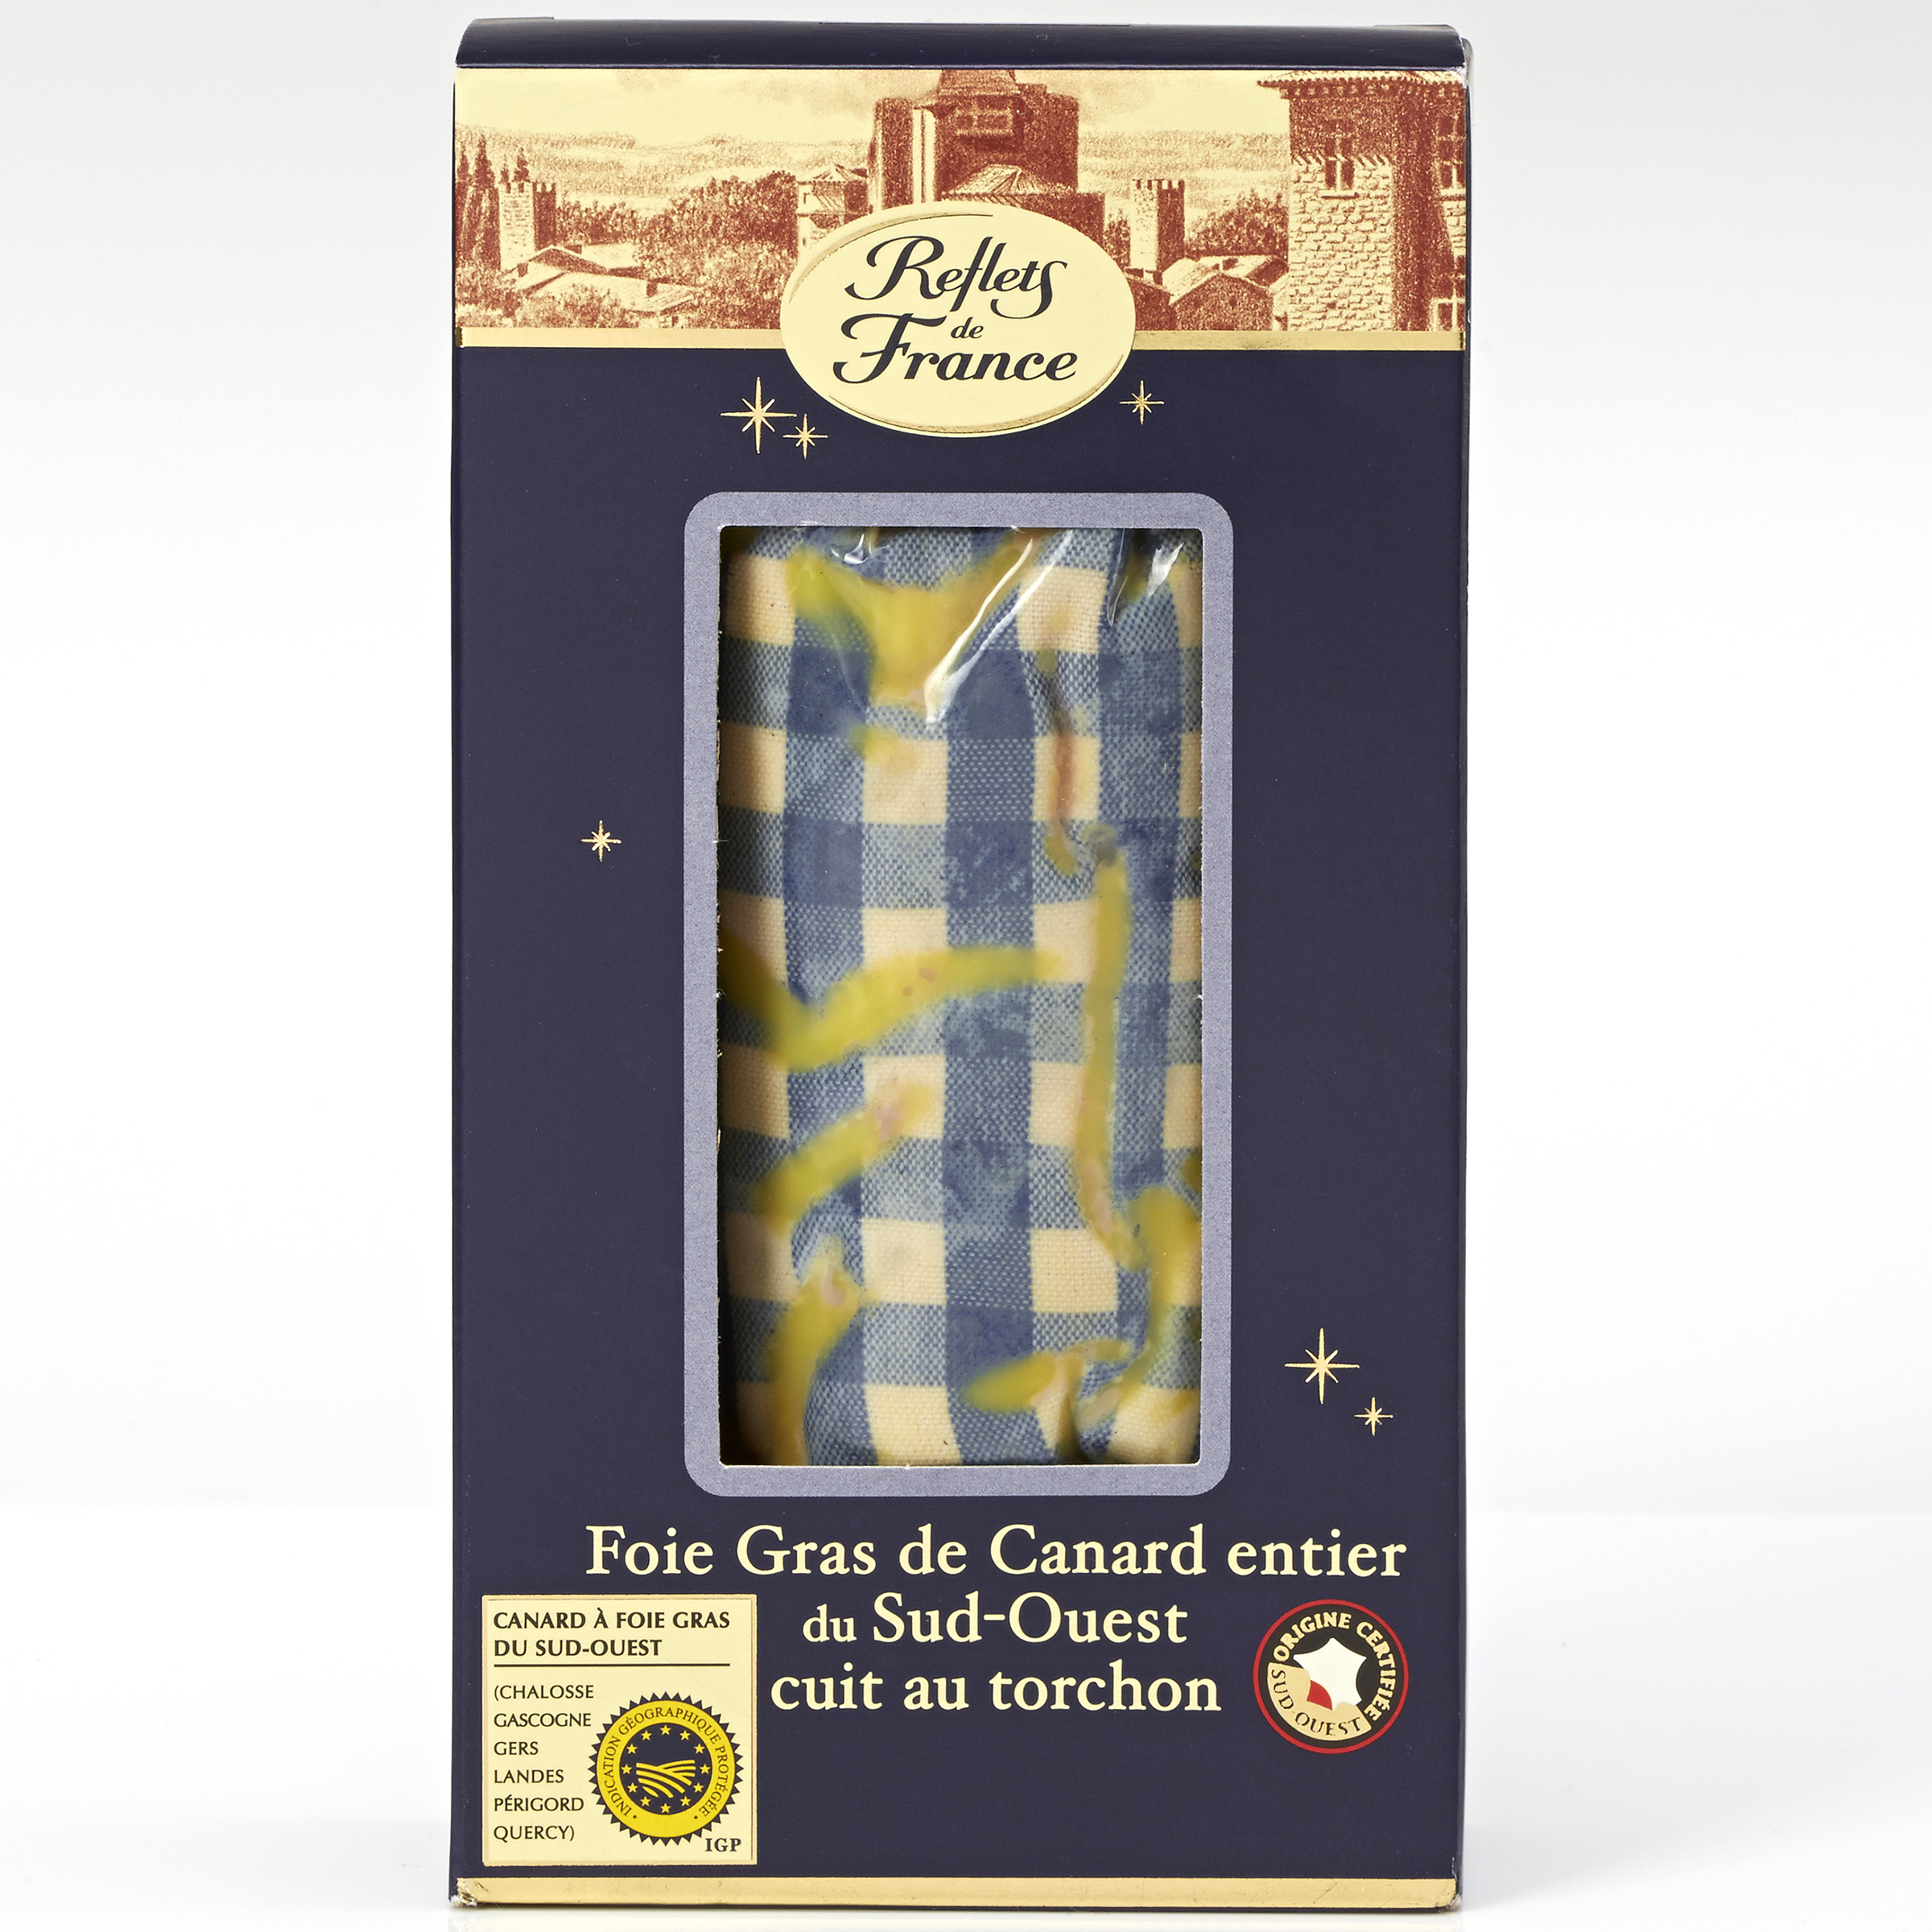 Reflets de France (Carrefour) Foie gras de canard entier du Sud-Ouest cuit au torchon